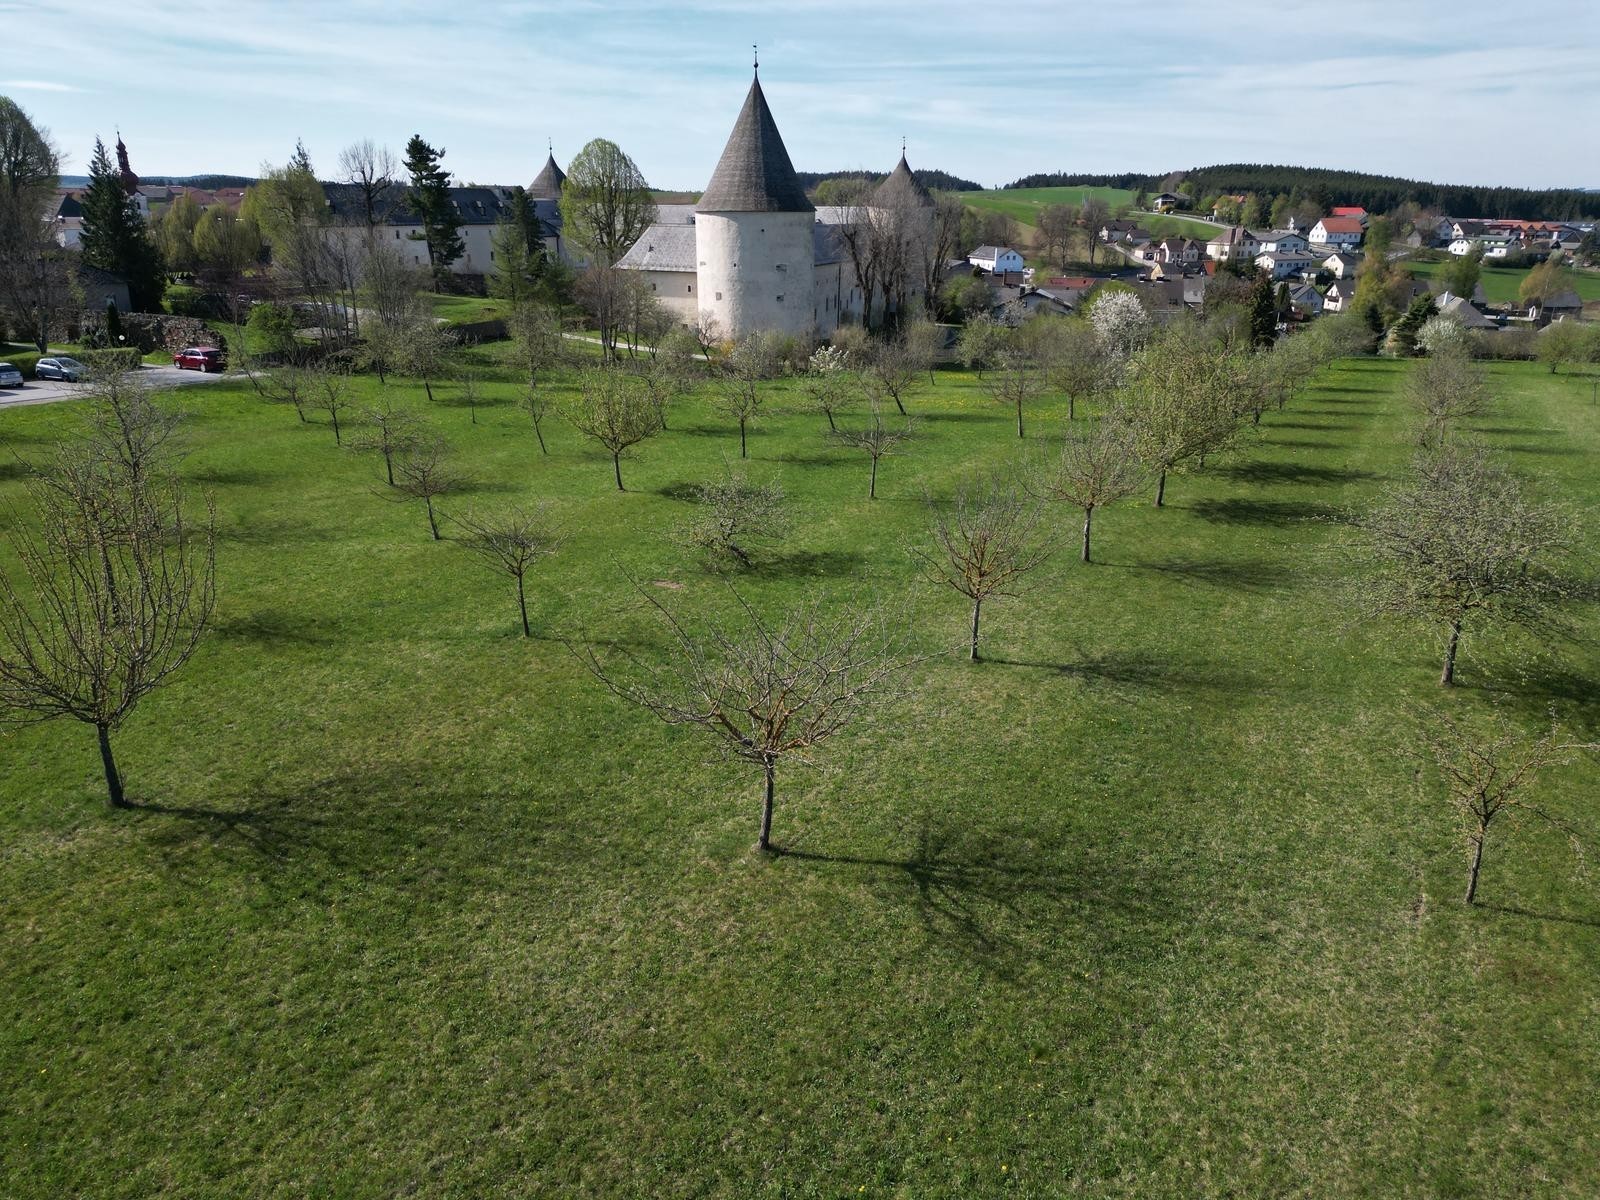 Ein Bild der Campingwiese. Auf dieser stehen zahlreiche in Reihen aufgestellte Apfelbäume. Im Hintergrund ist das Schloss zu sehen.